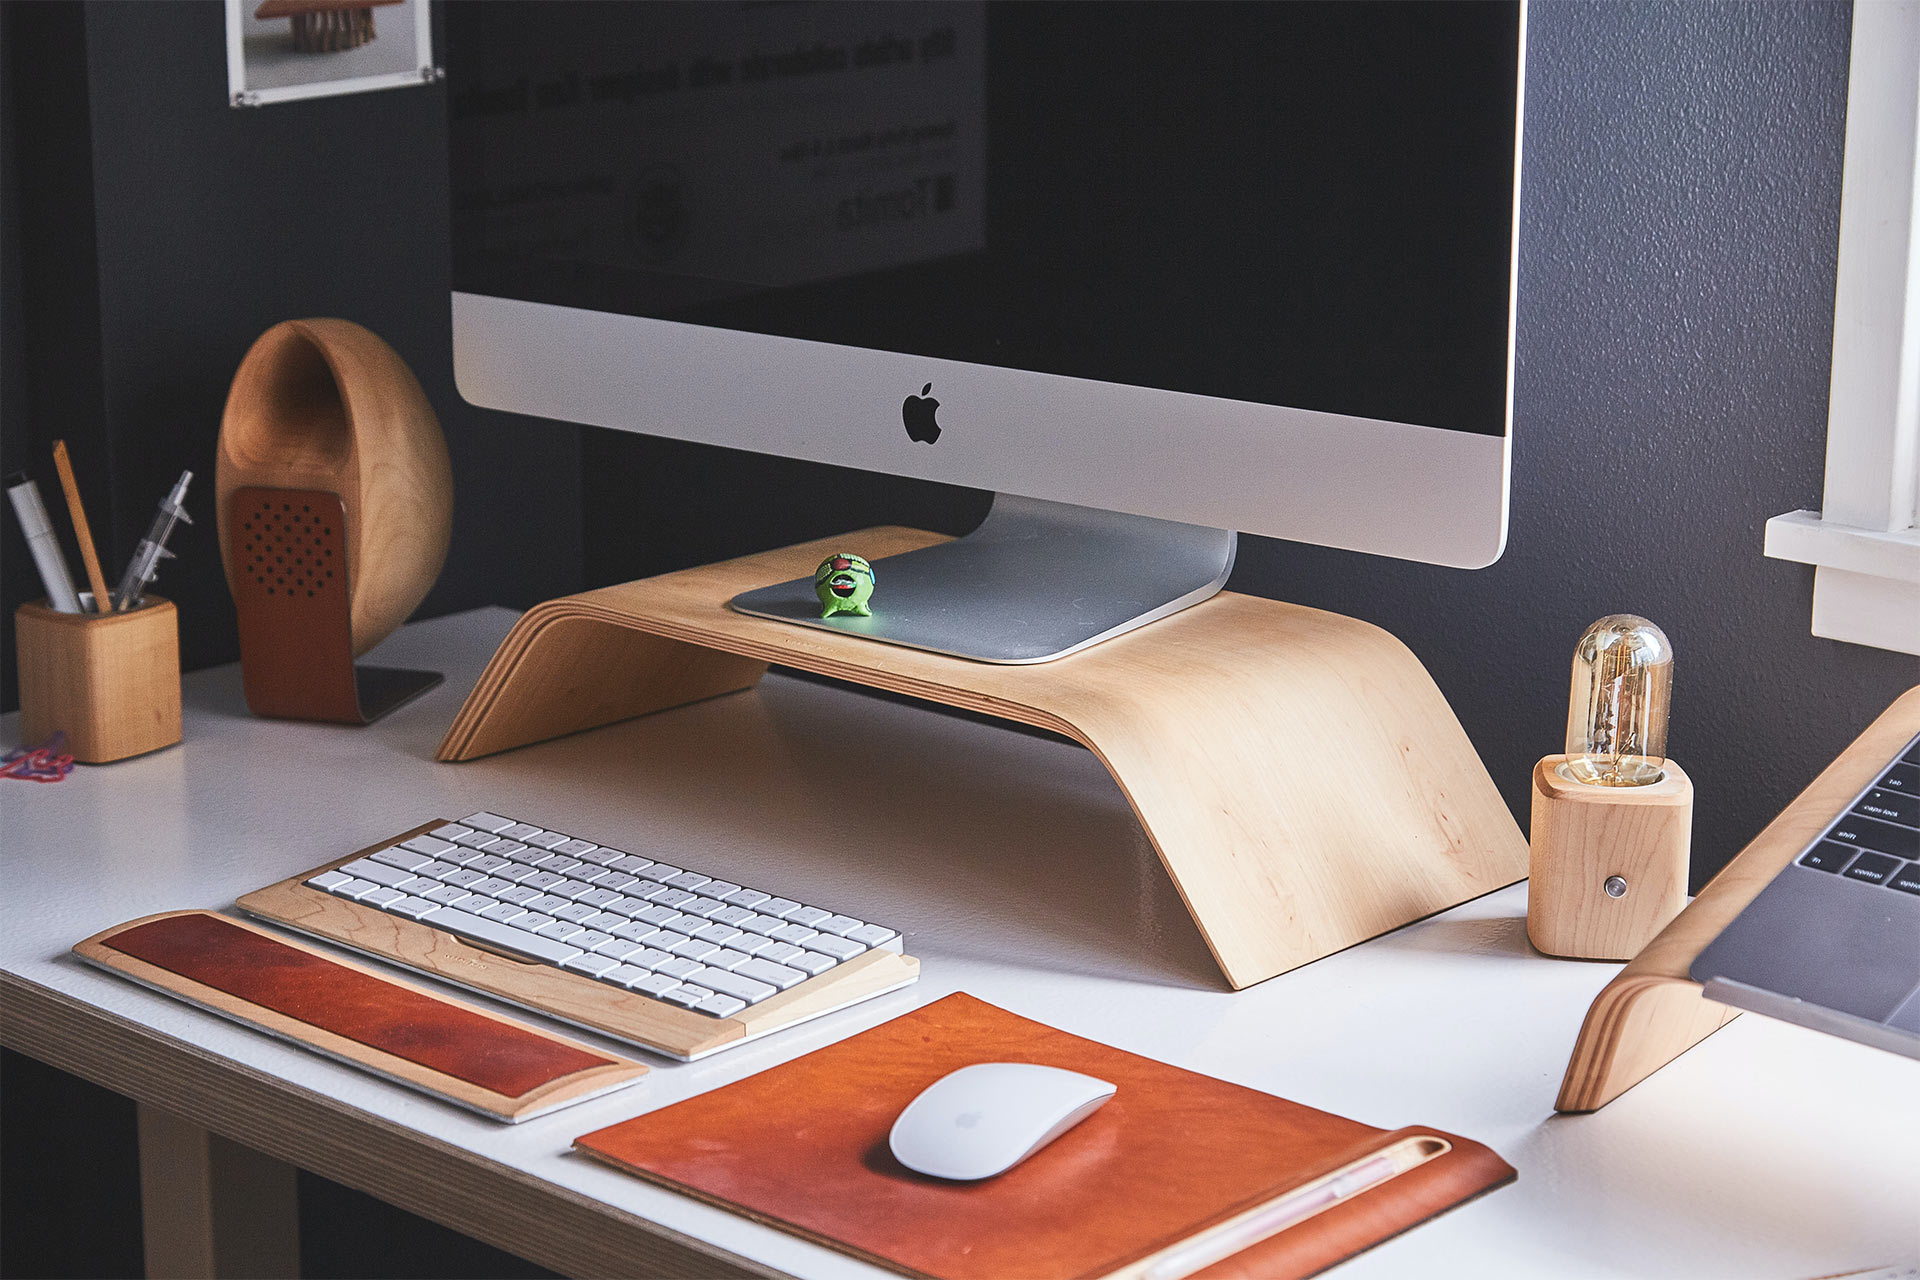 Ein iMac mit kabelloser Tastatur und Maus auf einer hölzernen Halterung auf einem Schreibtisch.